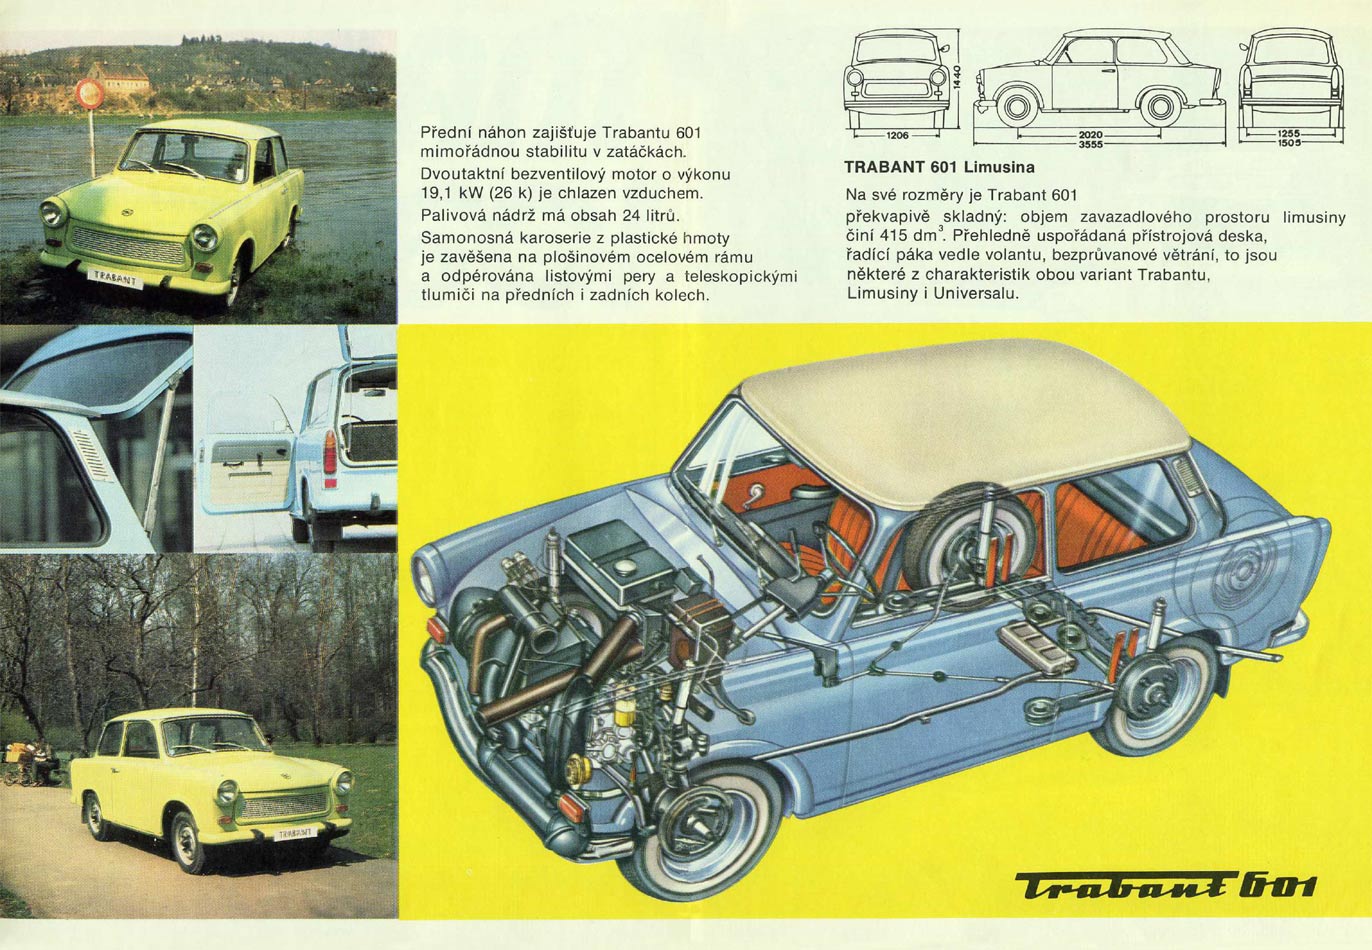 1979 - Trabant 601 - Seite 2und 3